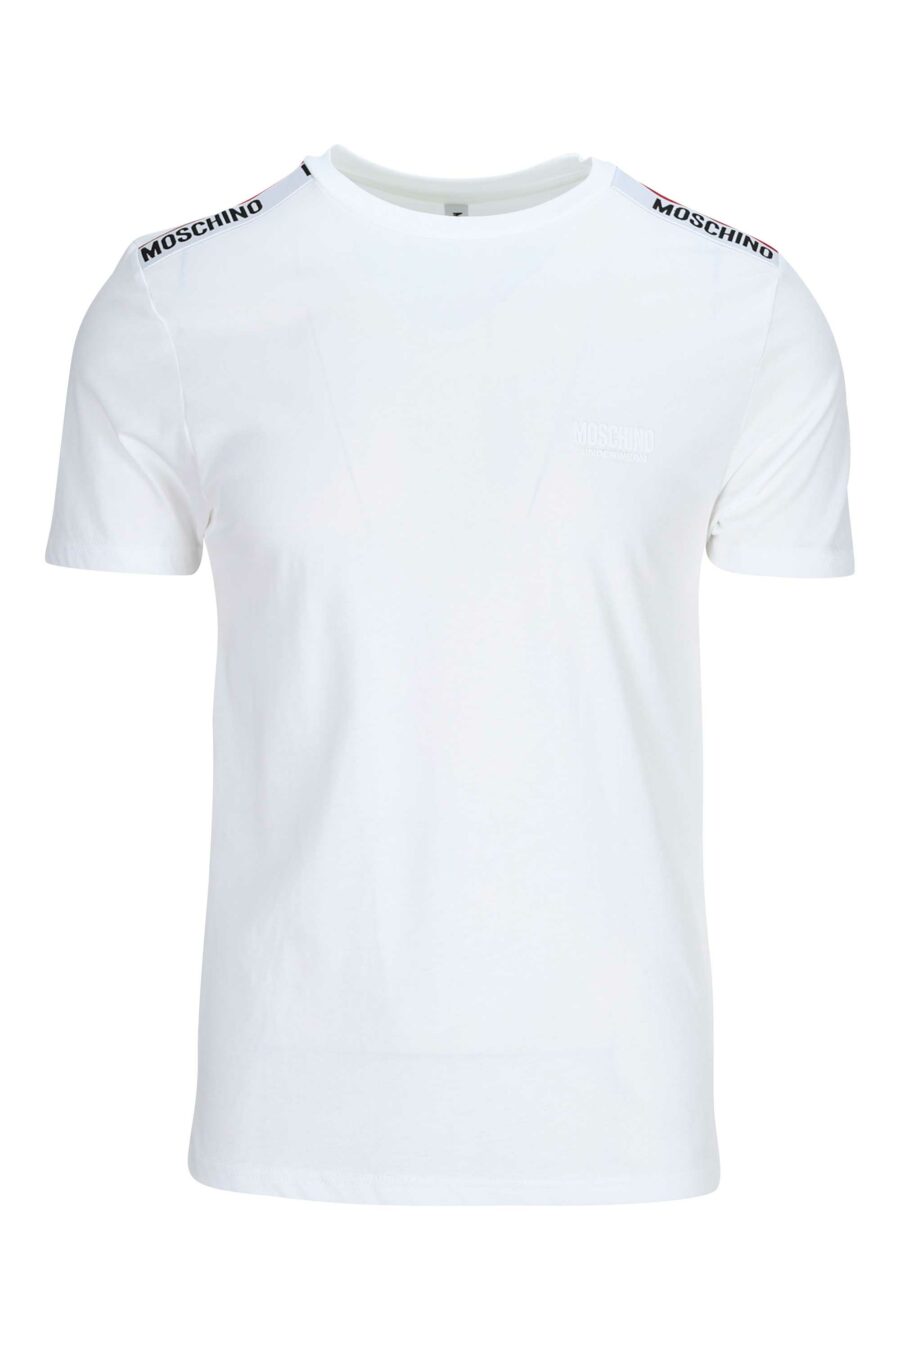 Weißes T-Shirt mit Logo auf den Schultern in Schleife - 667113024998